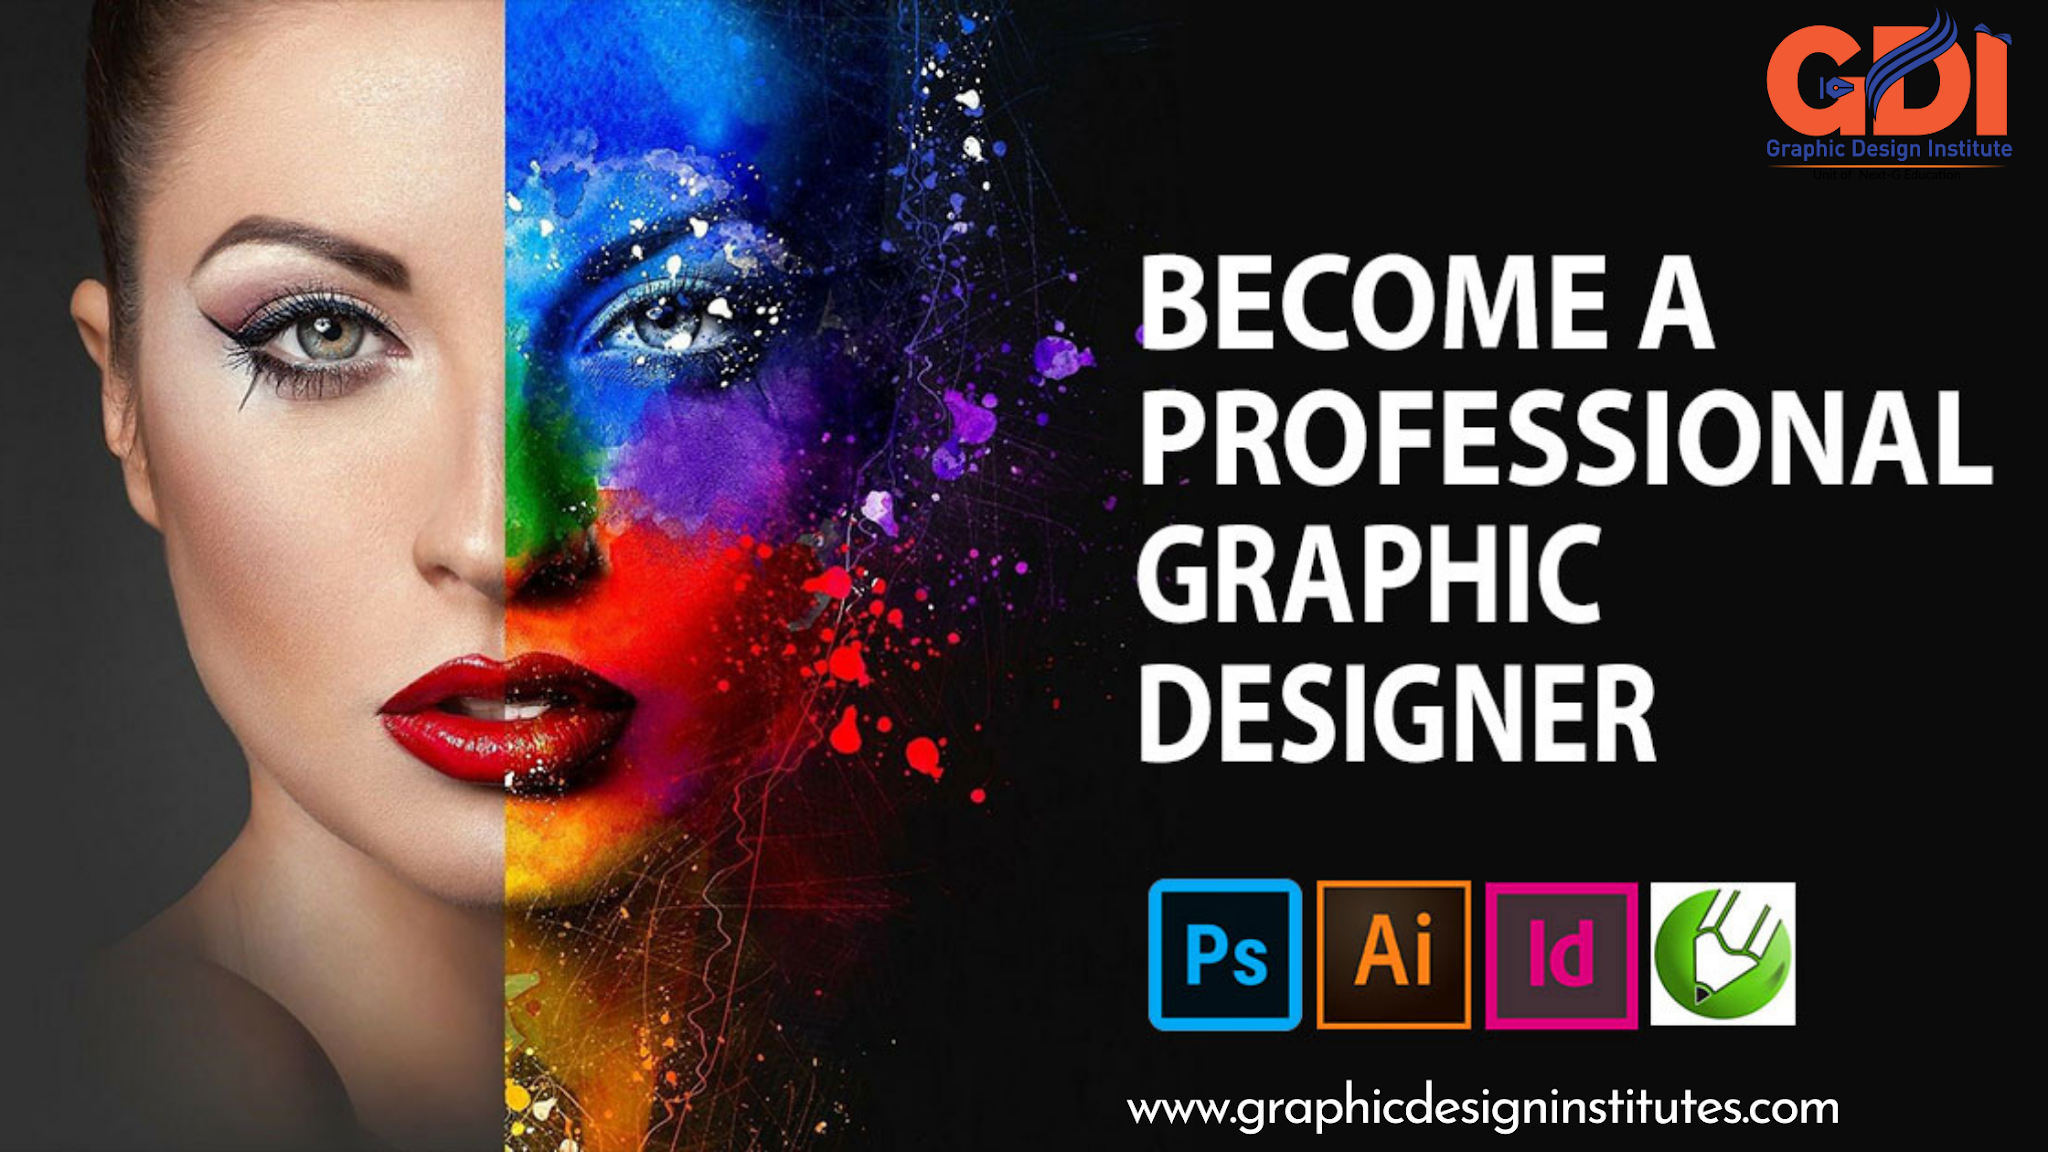 graphic designing institutes in delhi